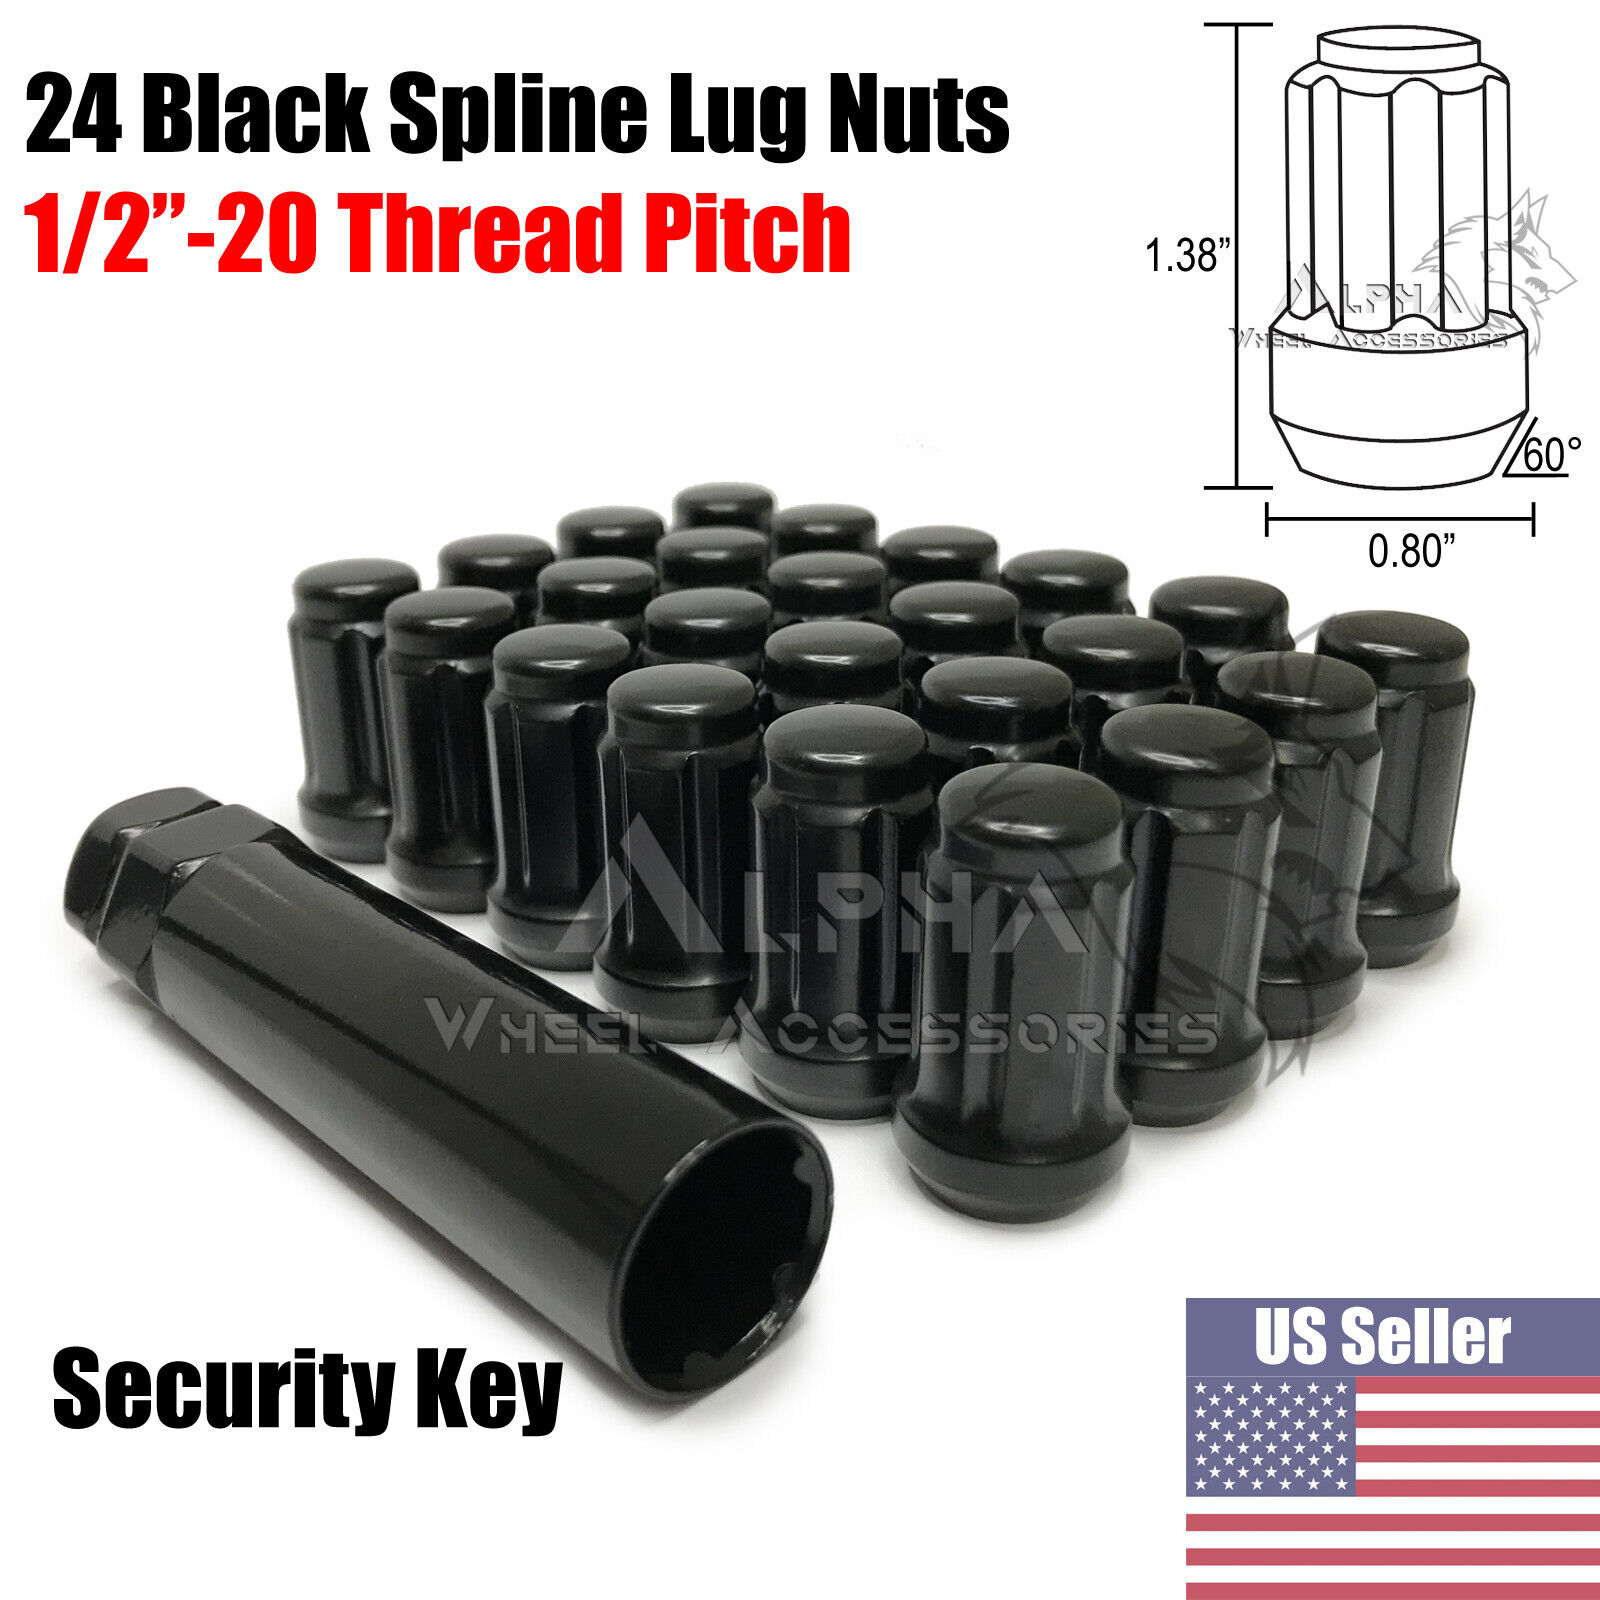 24 Black Spline Lug Nuts 1/2